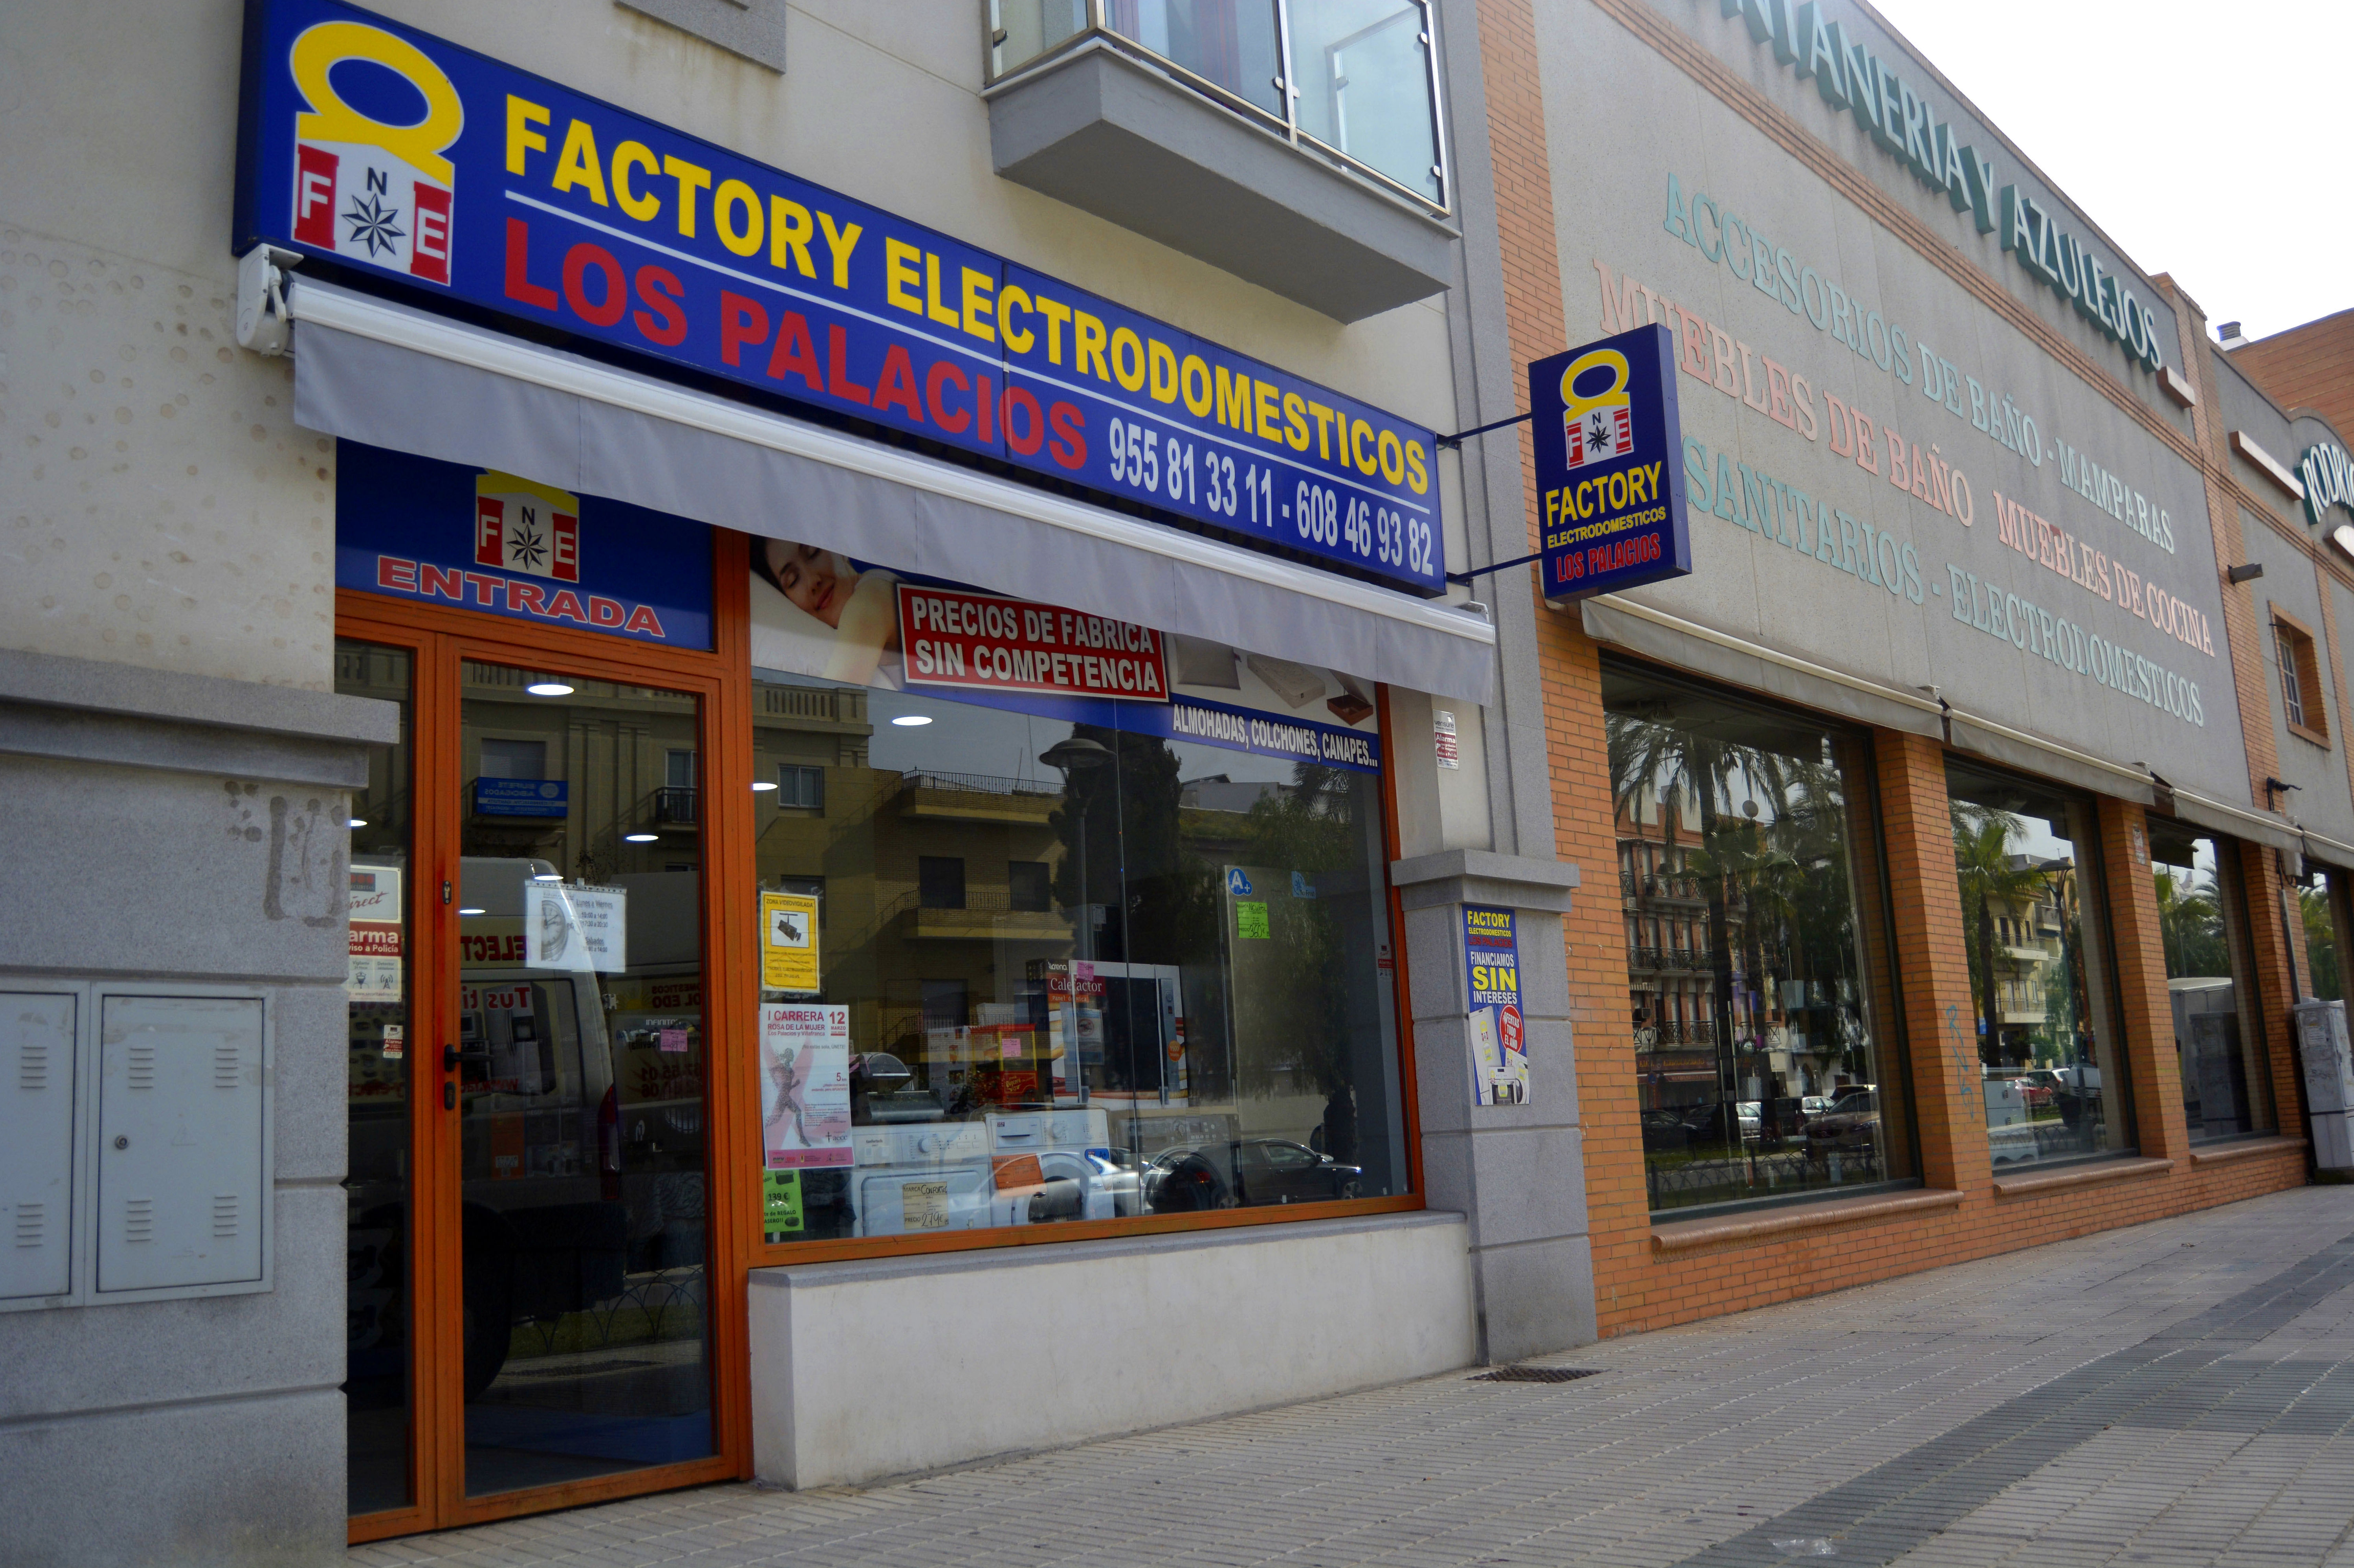 FACTORY ELECTRODOMÉSTICOS LOS PALACIOS